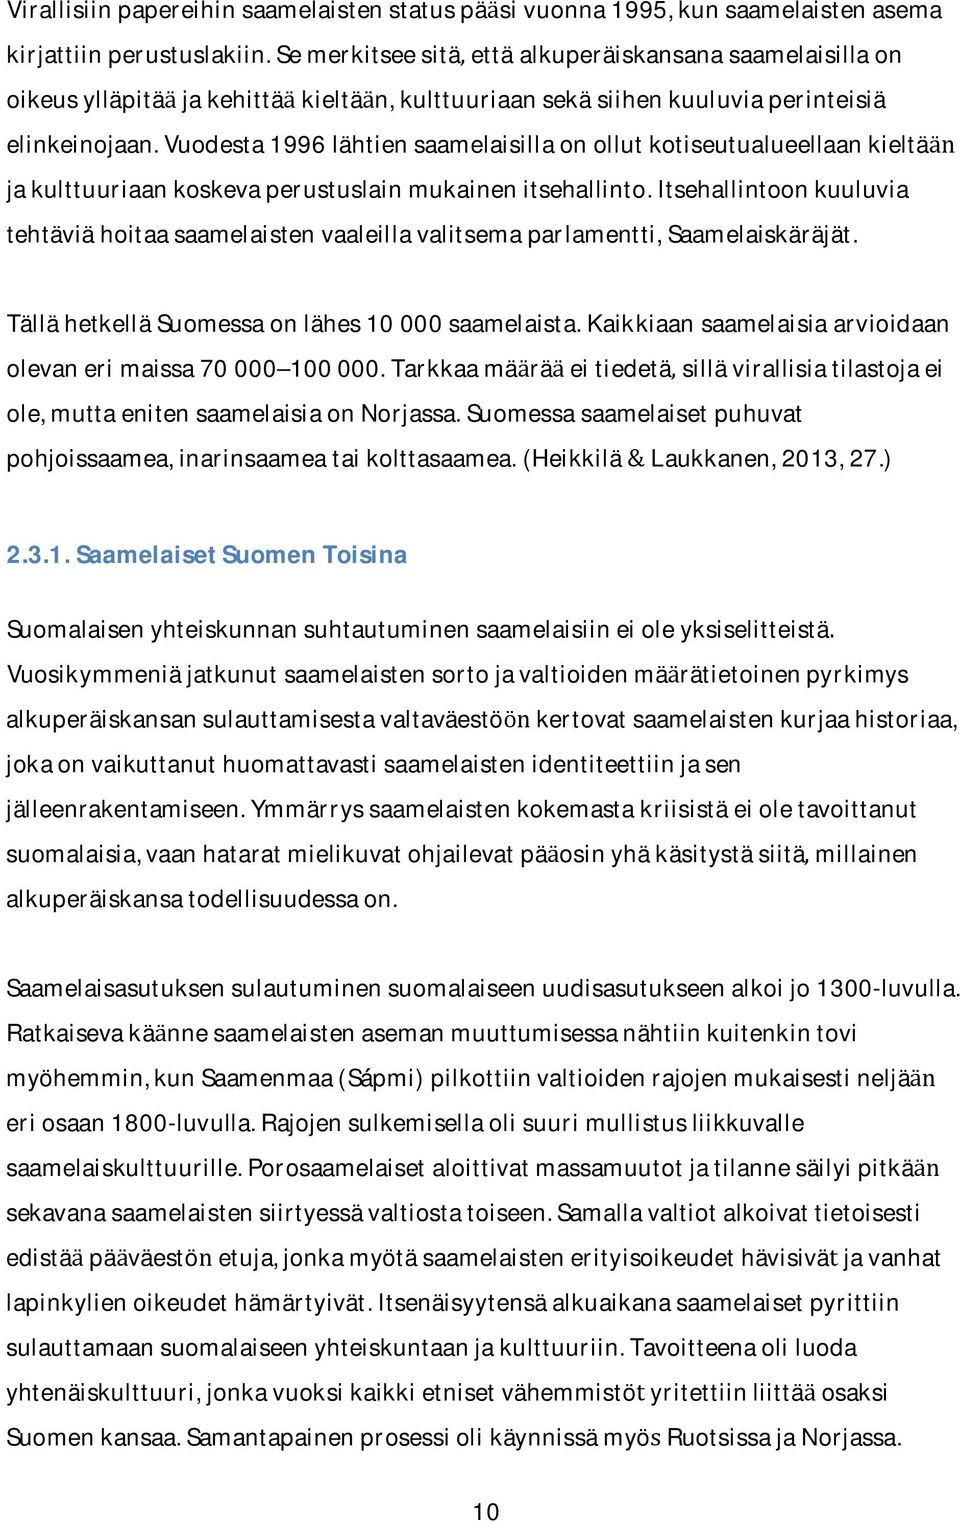 vuodesta1996lahtiensaamelaisillaonollutkotiseutualueellaankielta jakulttuuriaankoskevaperustuslainmukainenitsehallinto.